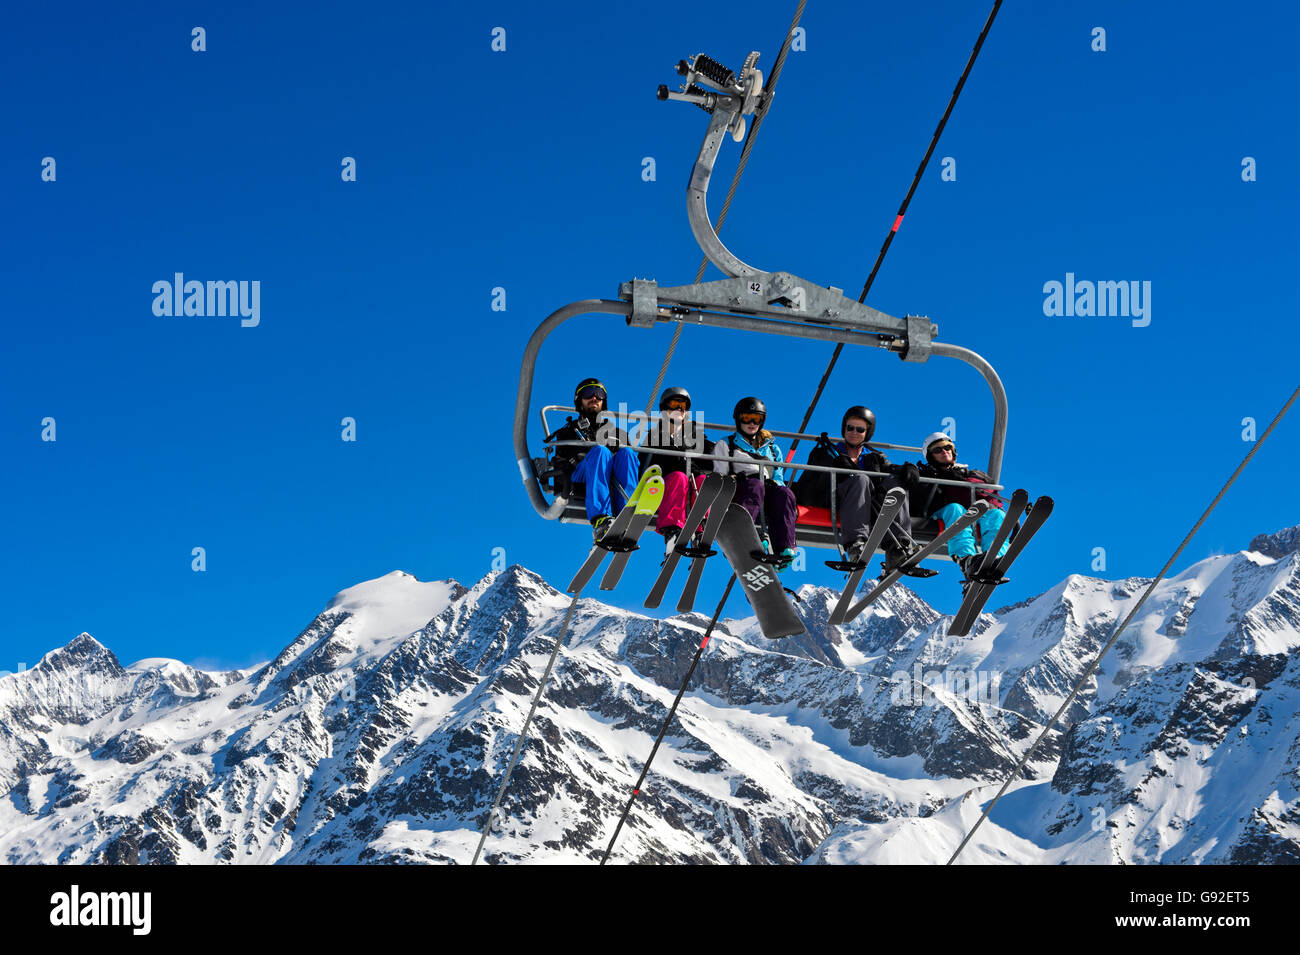 Skieurs sur un télésiège dans la station de ski Les Contamines-Montjoie, derrière le massif du Mont Blanc, Haute-Savoie, France Banque D'Images